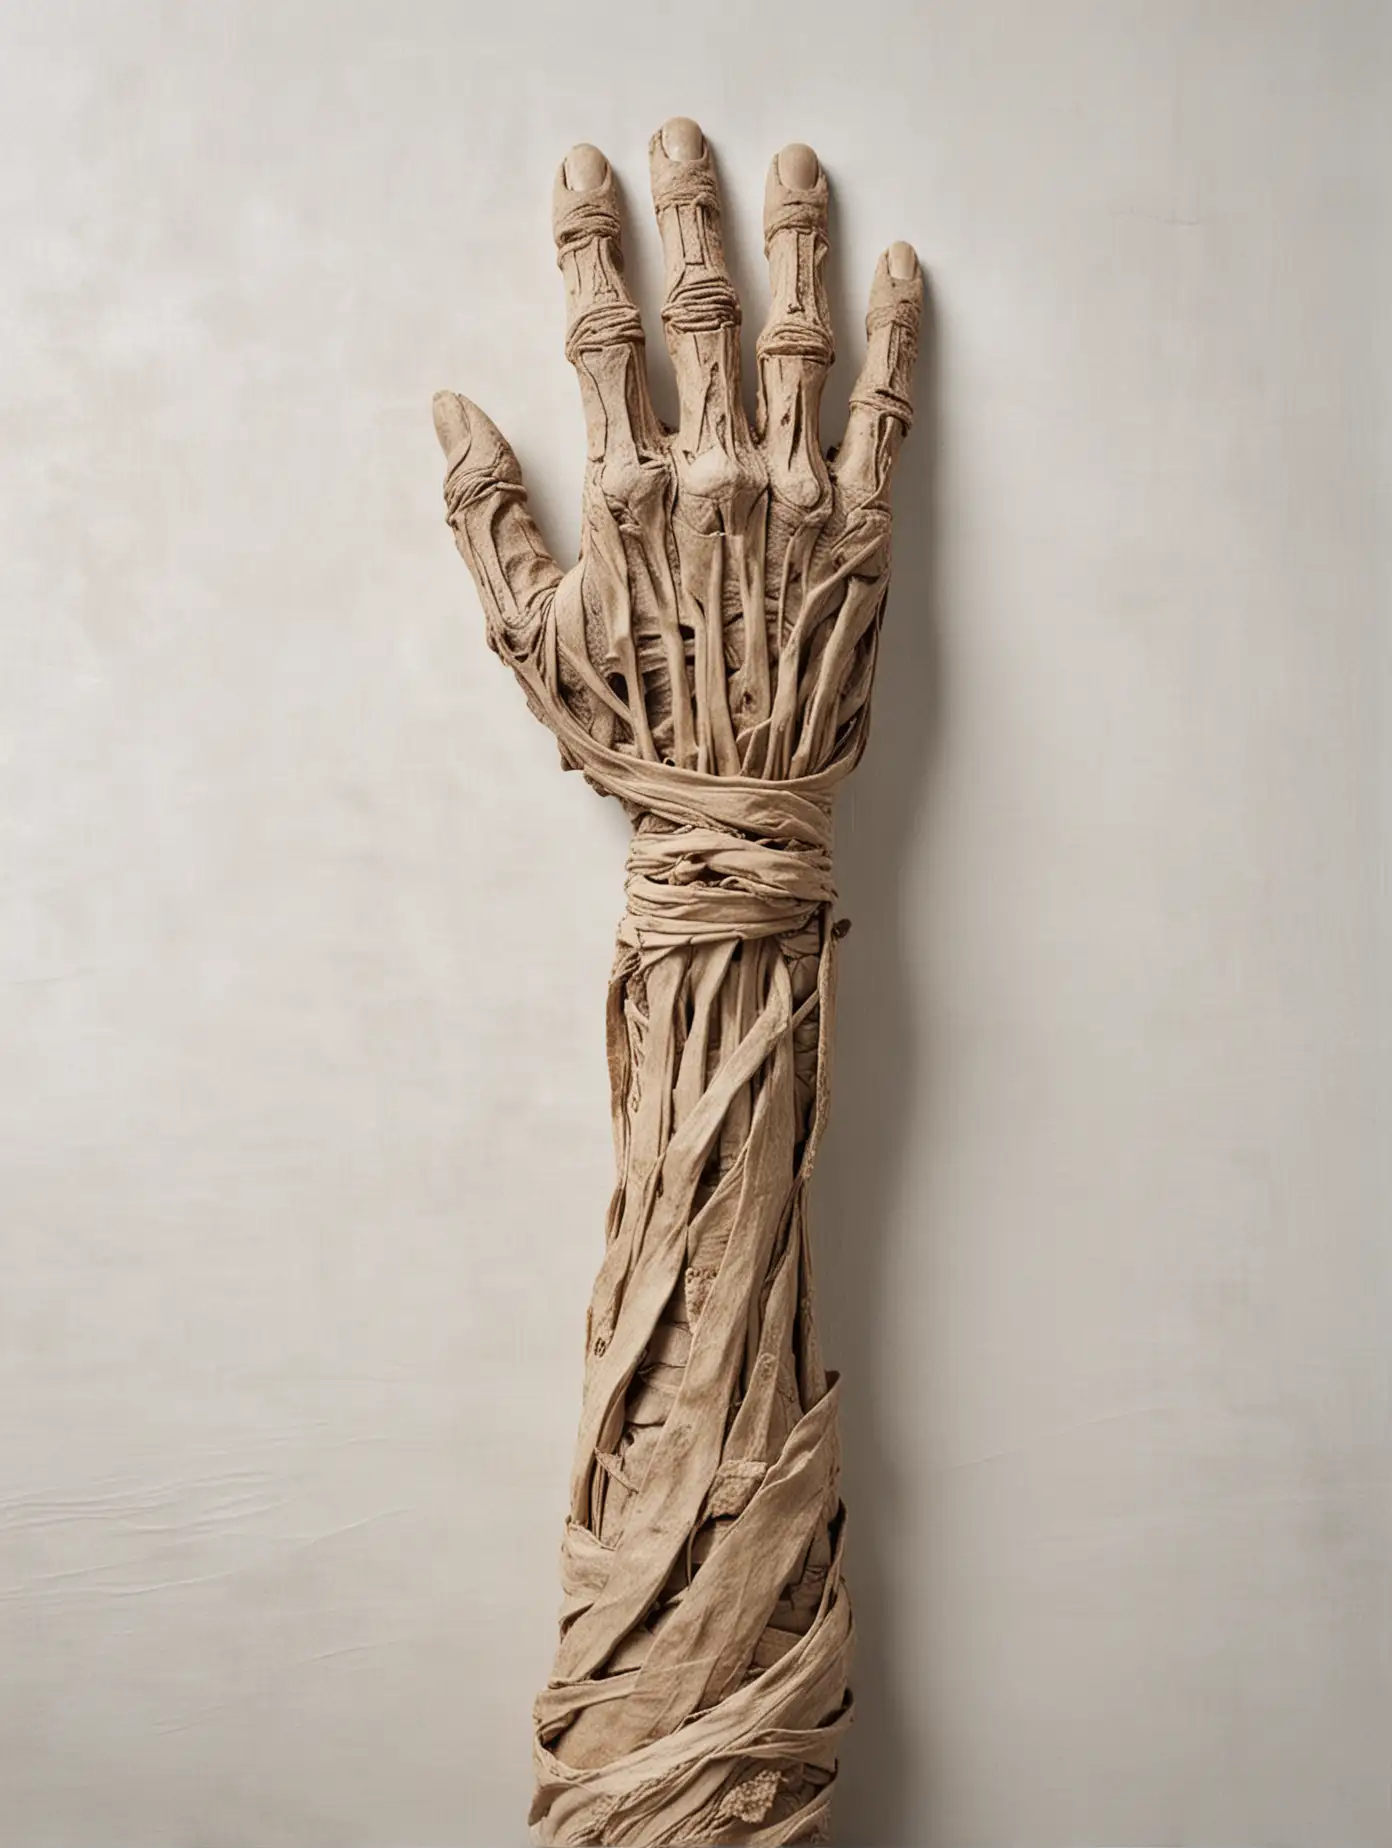 Main et avant-bras momifiée qui sorte de l'image,  sur un drap blanc 

